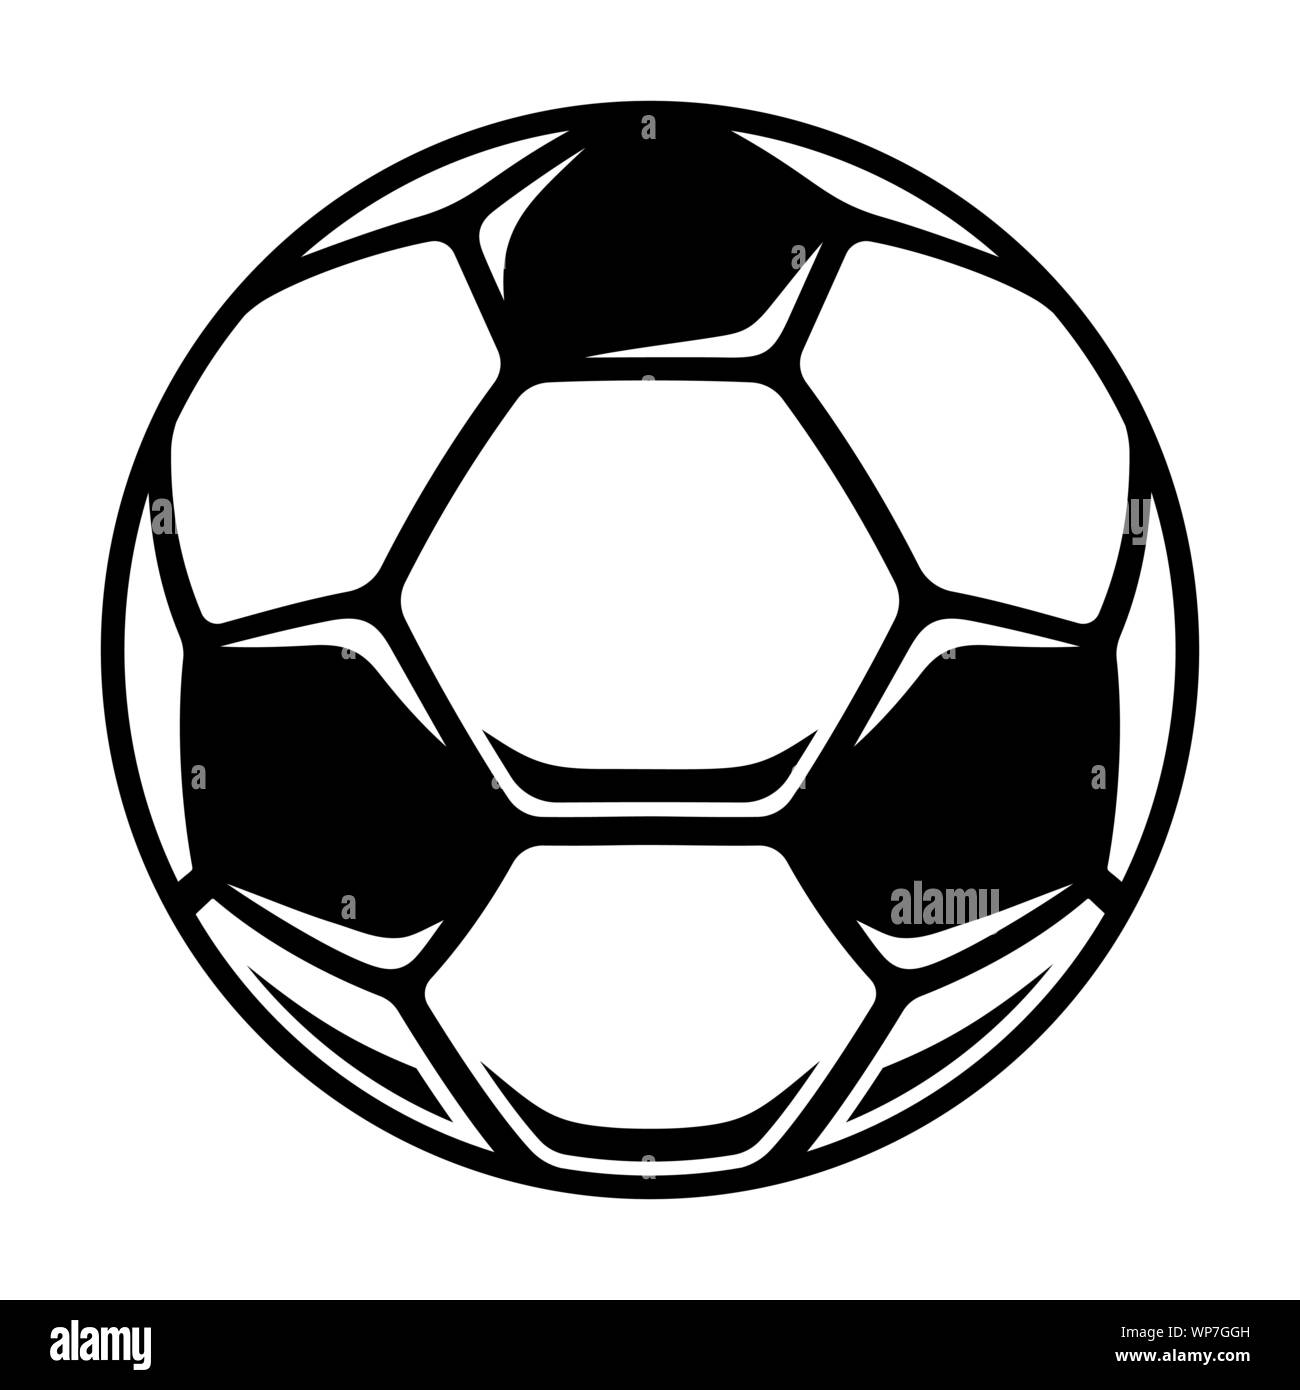 Icono de balones de fútbol. Balón de fútbol europeo. En blanco y negro ilustración vectorial Ilustración del Vector